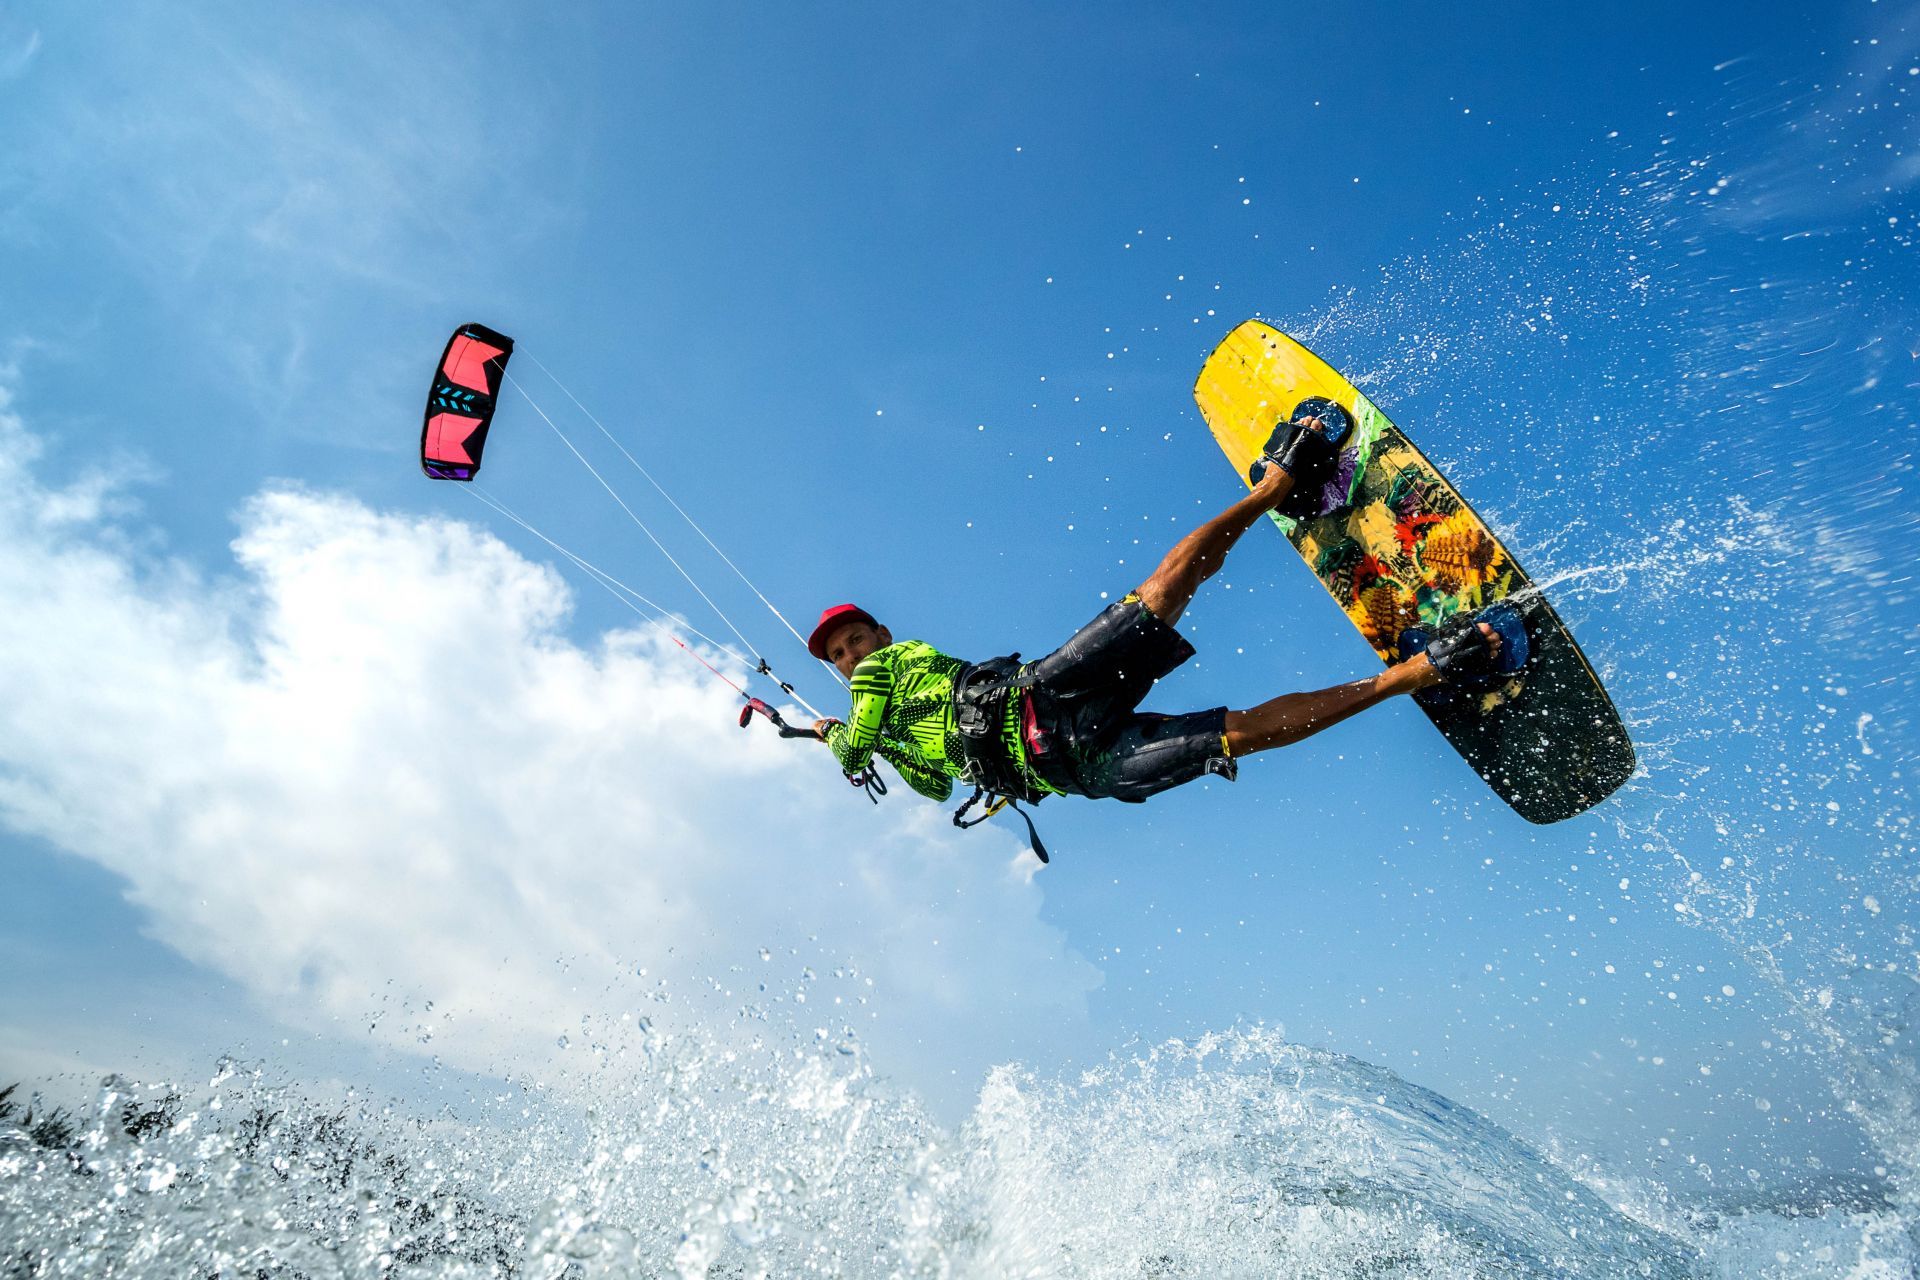 亞庇風箏衝浪探索 &amp; 電動水翼衝浪體驗